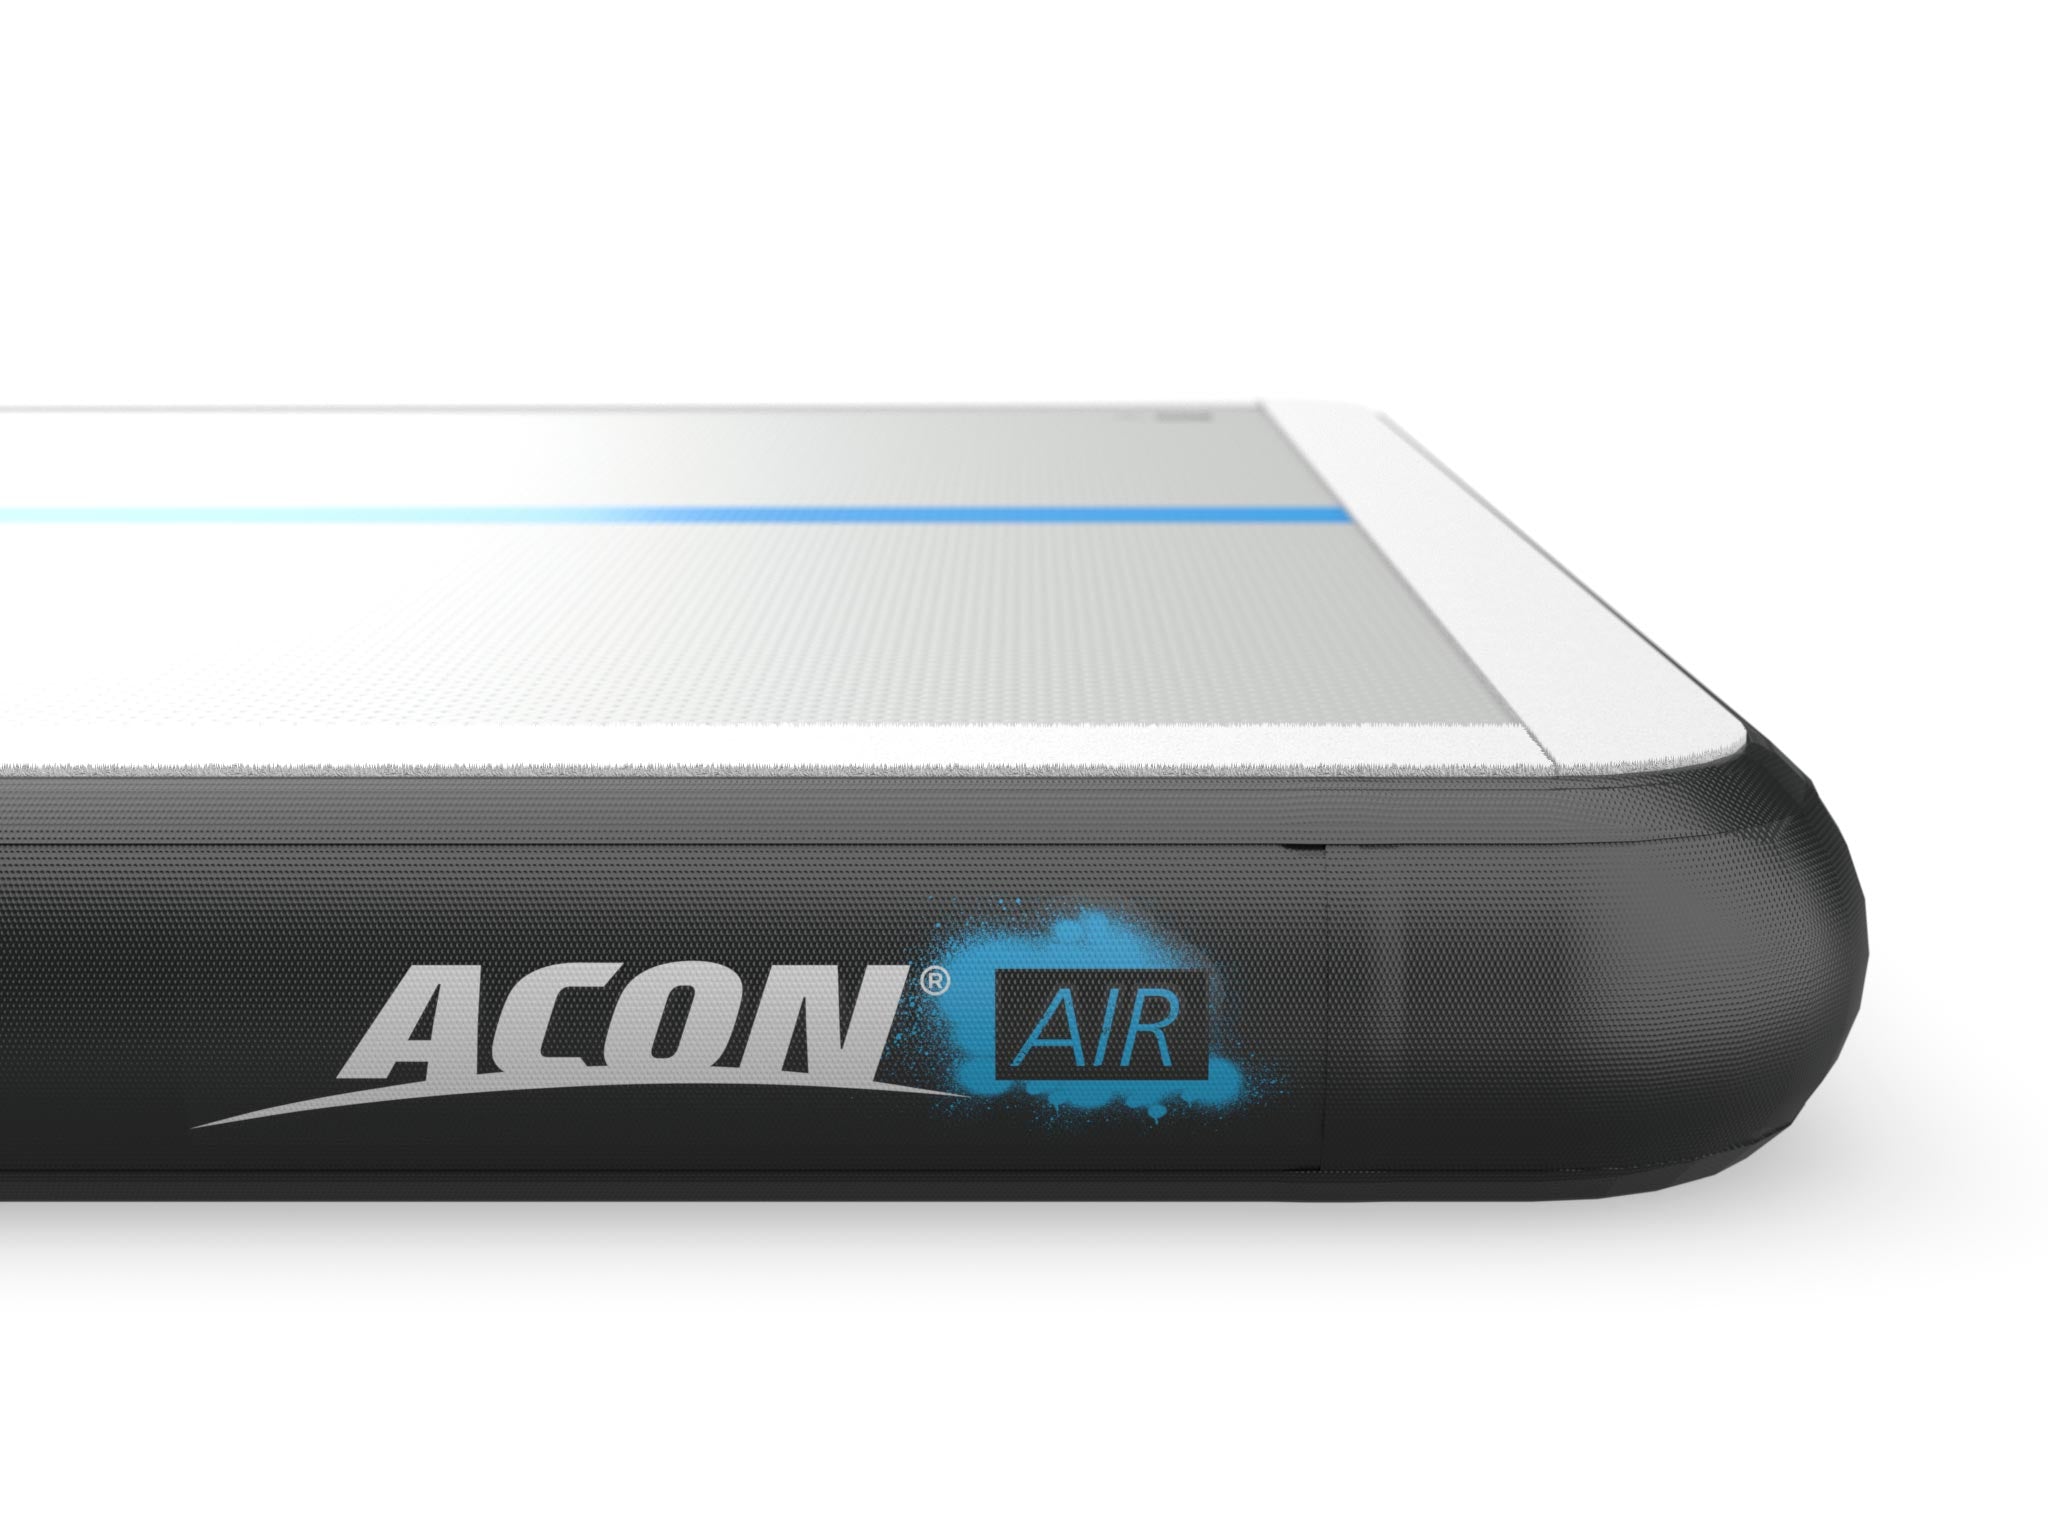 ACON Stora AirTrack 4m - acon-se - detaljer av logon